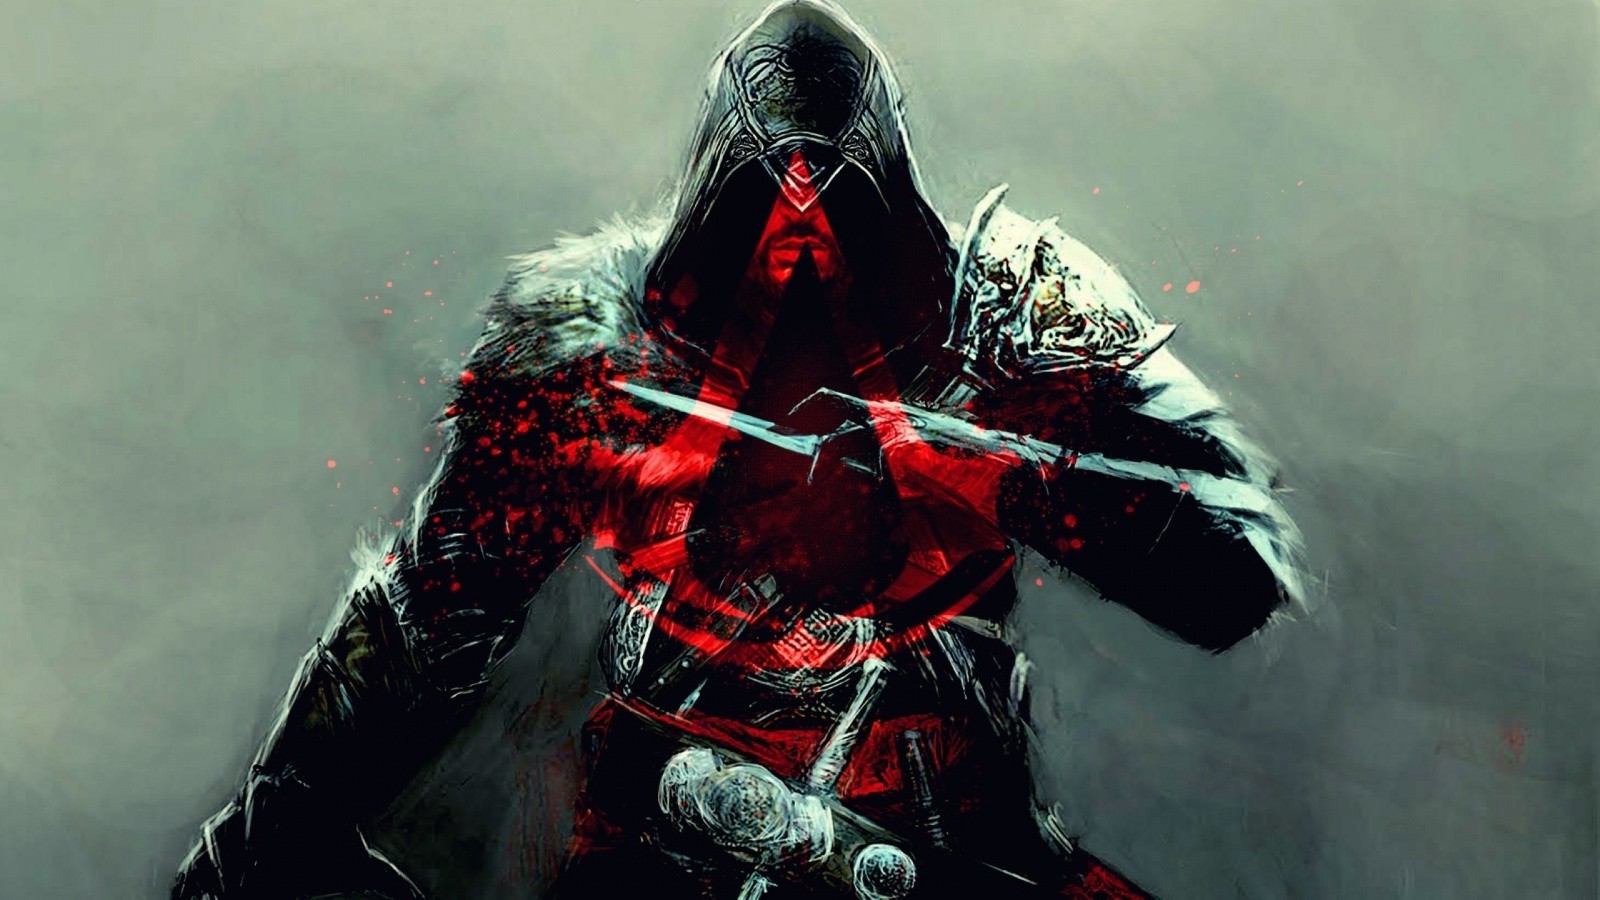 Assassins Creed: Revelations, Ezio Auditore Da Firenze, Video Games, Assassins Creed Wallpaper